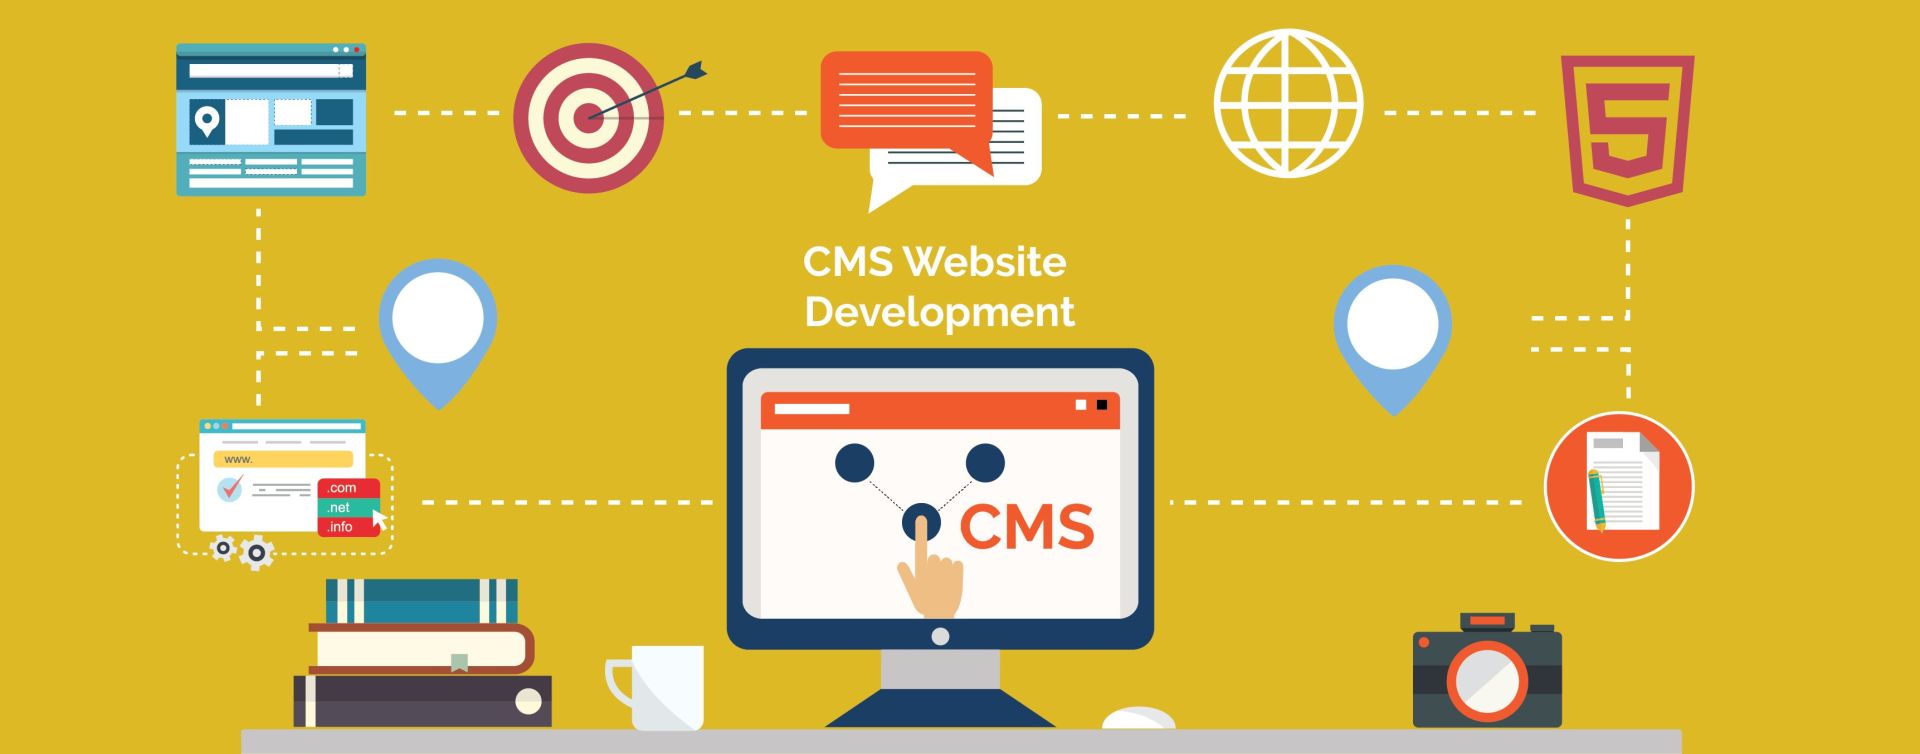 Cơ bản về web cms là gì và lợi ích sử dụng